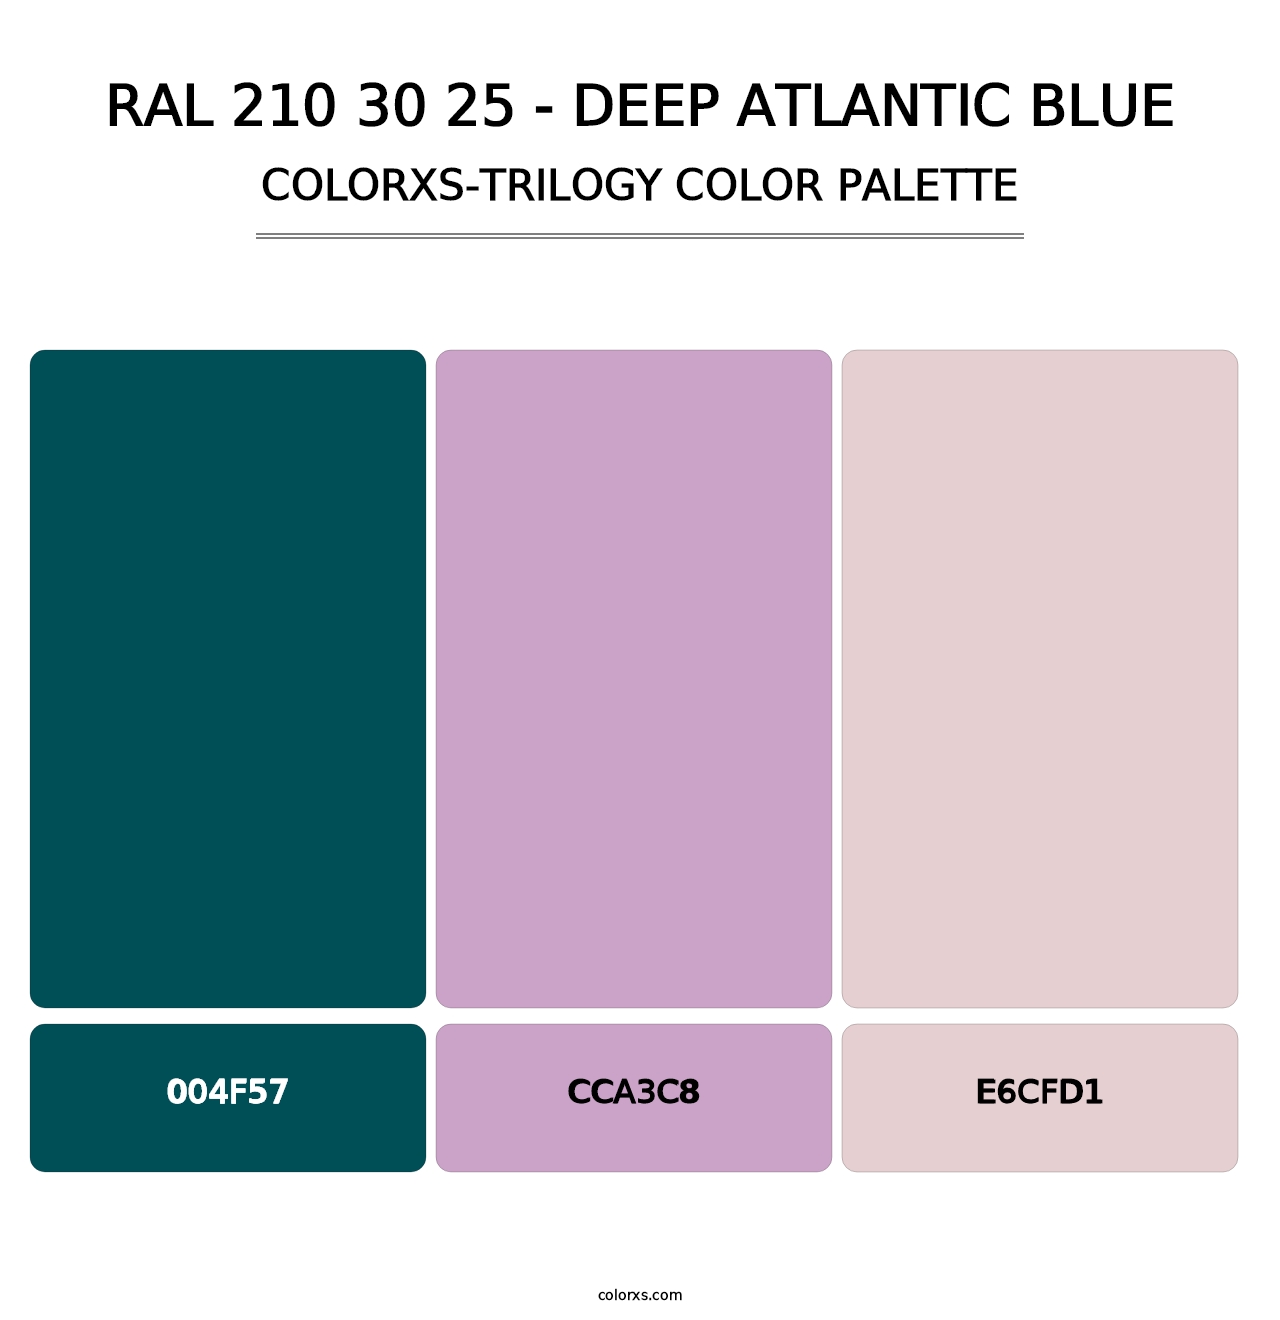 RAL 210 30 25 - Deep Atlantic Blue - Colorxs Trilogy Palette